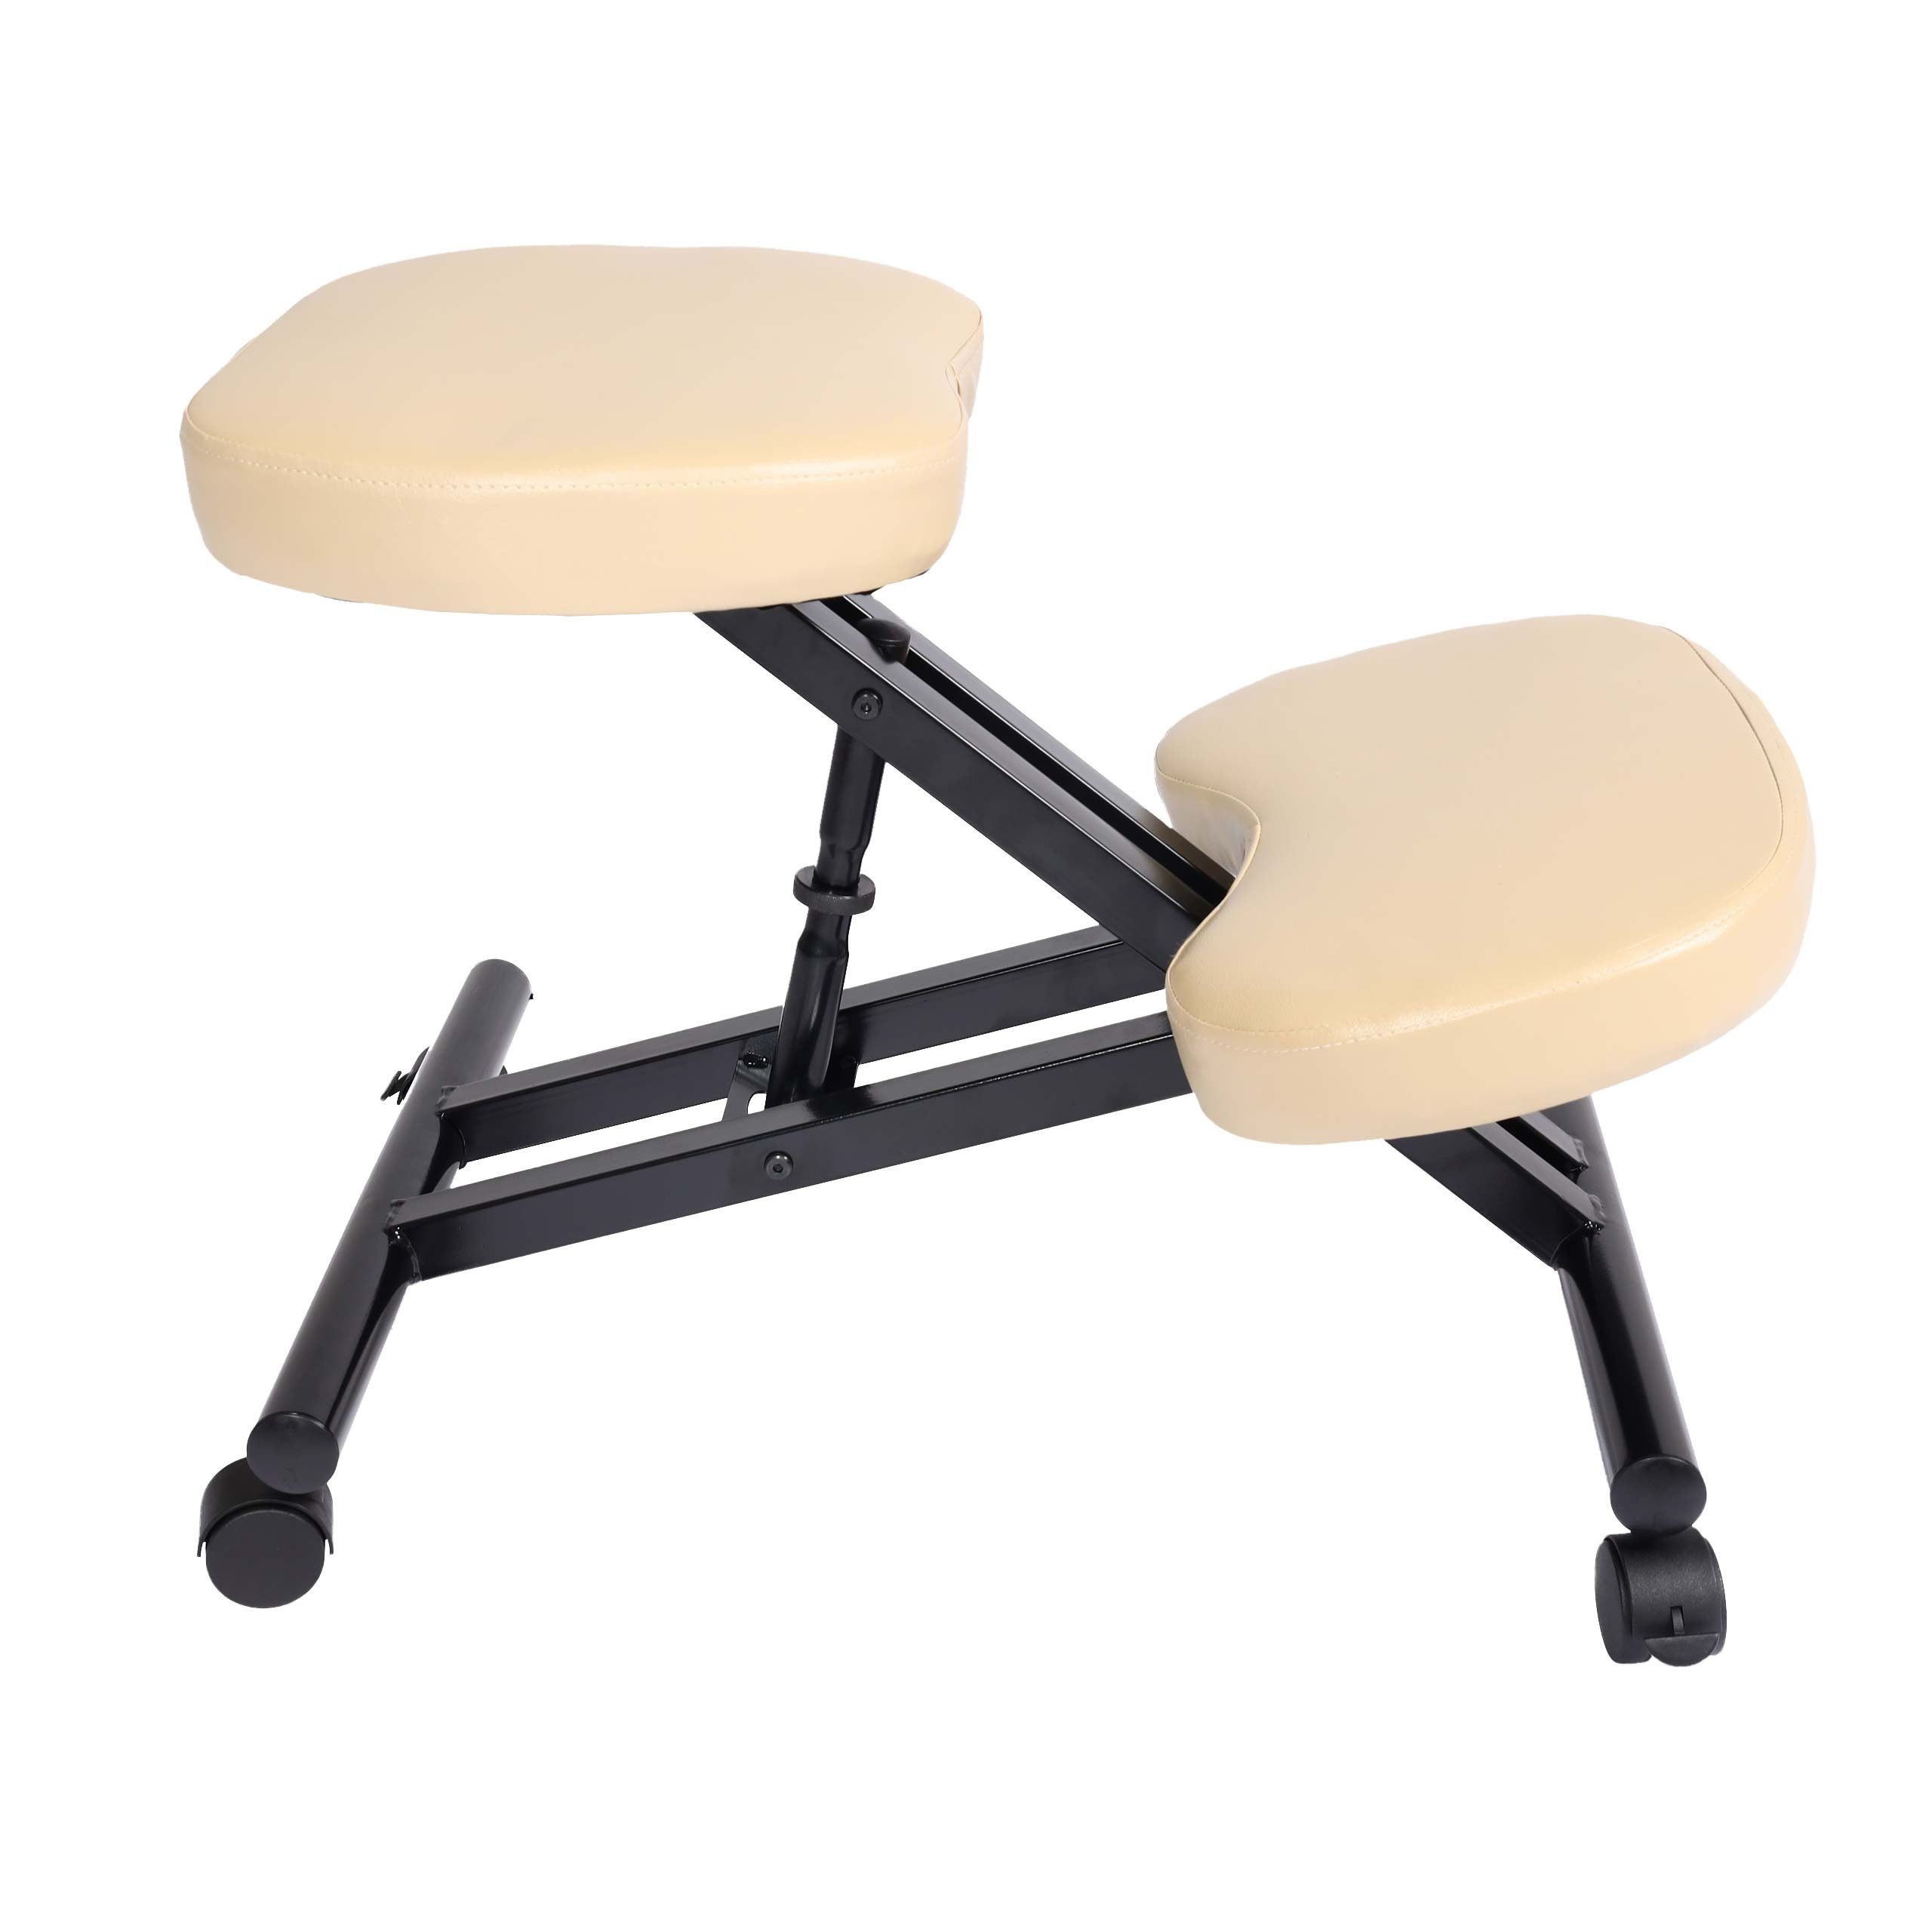 MCW Schreibtischstuhl MCW-E10, Höhenverstellbare Sitzfläche, Weich gepolsterte Knie- und Sitzfläche creme-beige